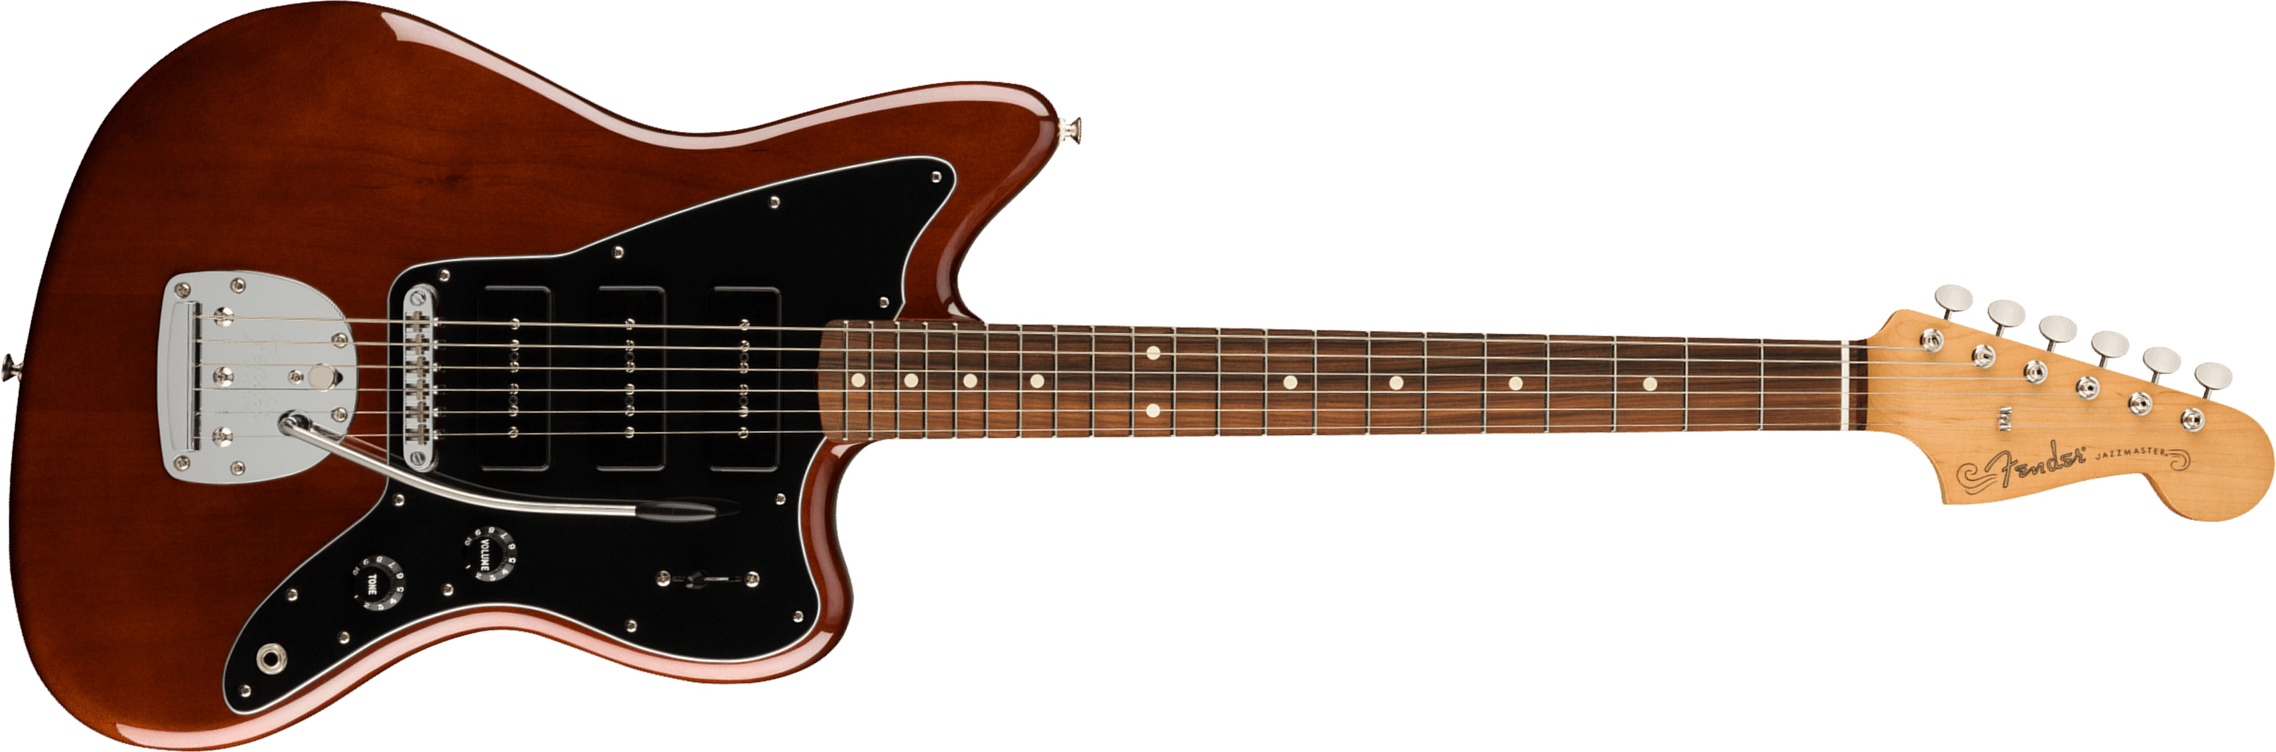 Fender Jazzmaster Noventa Mex Sss Pf +housse - Walnut - Retro-rock elektrische gitaar - Main picture